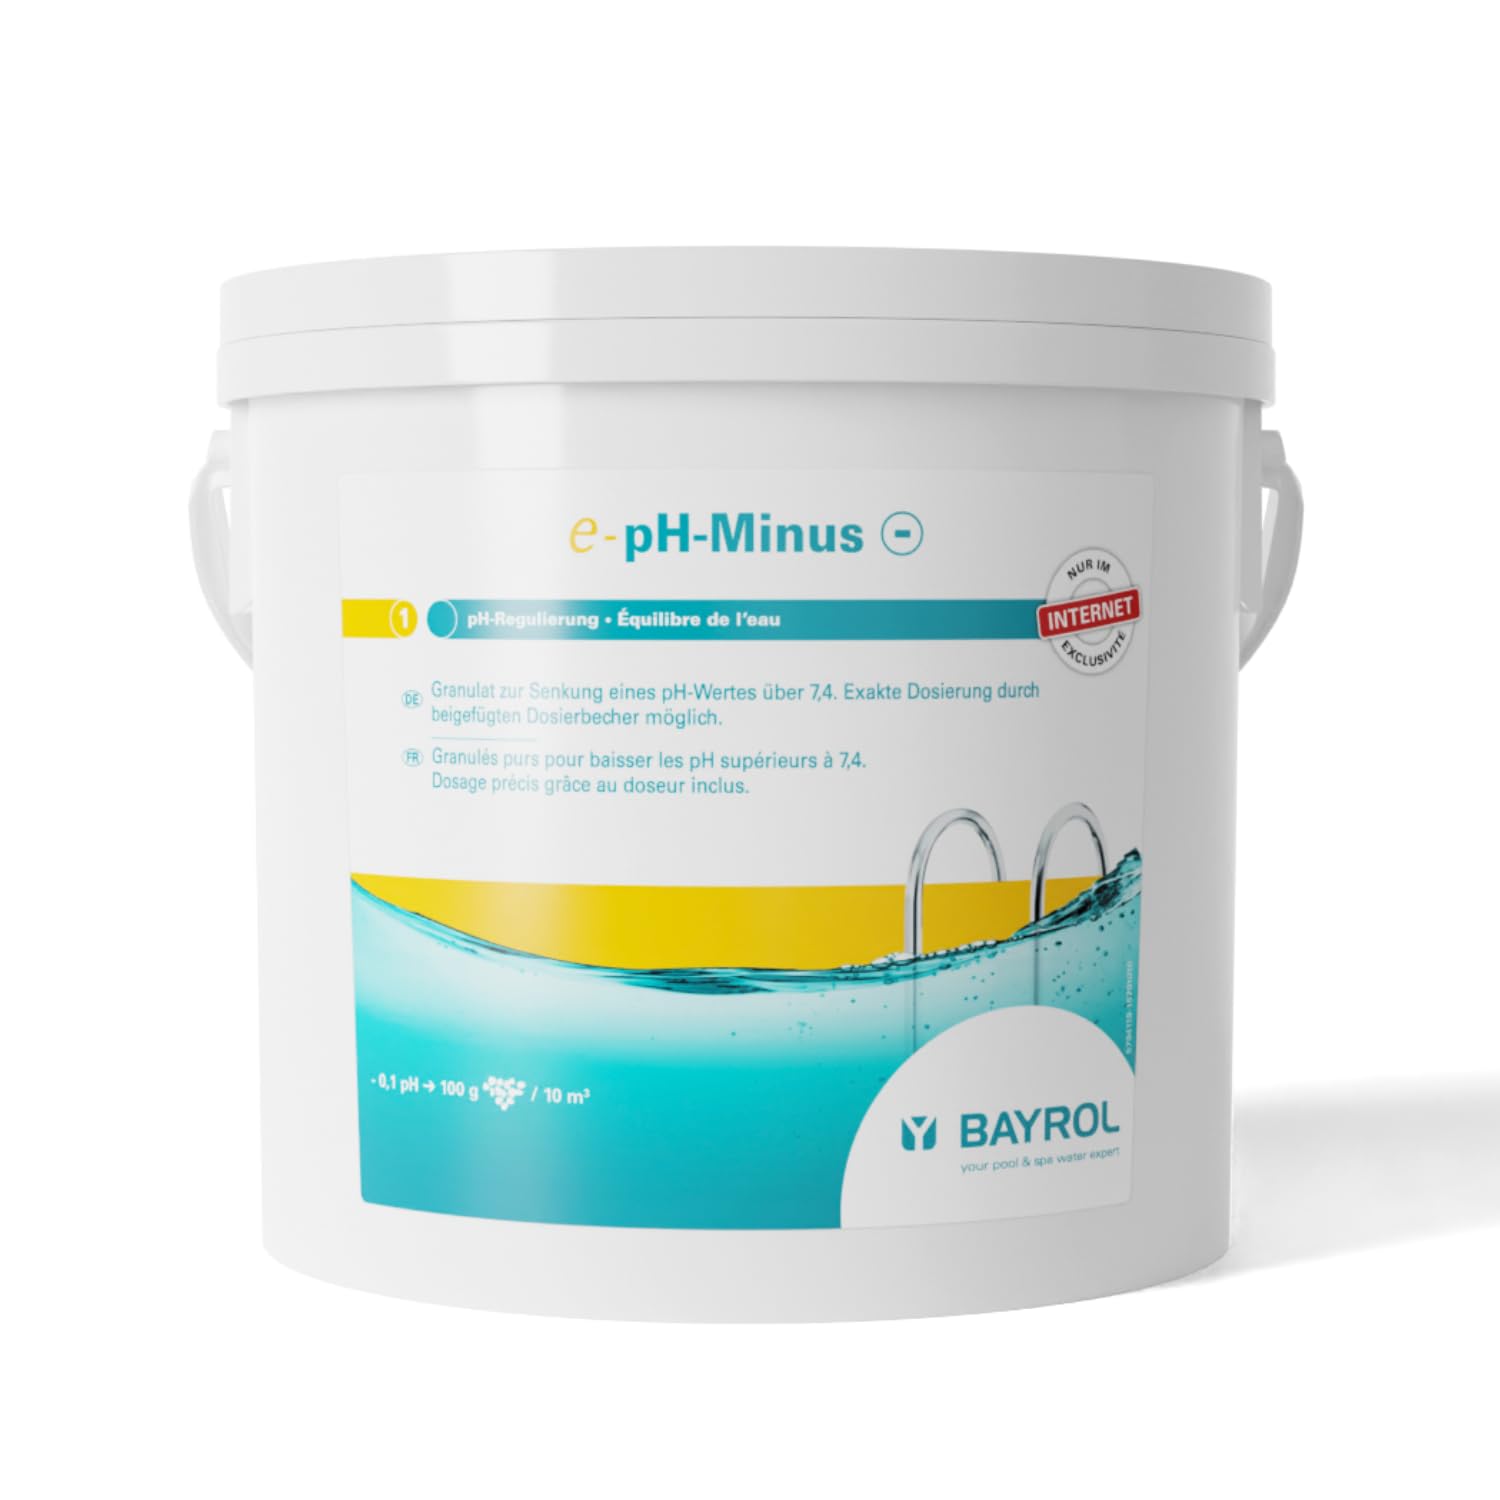 BAYROL e-pH-Minus Granulat 6 kg- senkt schnell & effektiv einen zu hohen pH Wert im Pool - einfache Dosierung direkt ins Wasser - enthält Dosierbecher - pH Senker - pH Regulierung Pool